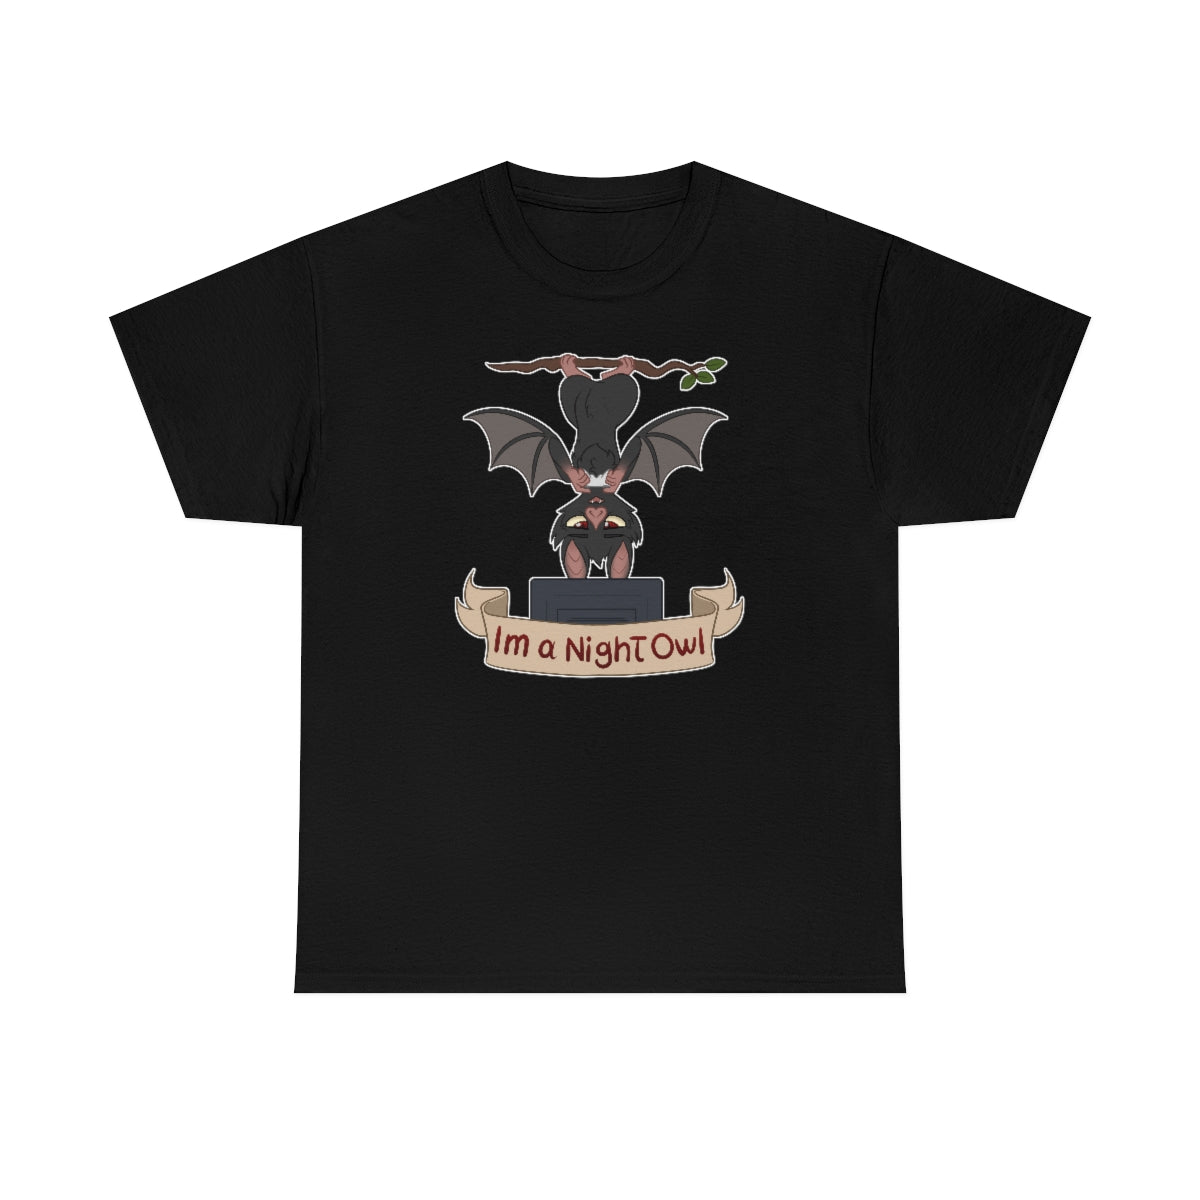 I am a Night Owl - T-Shirt T-Shirt Artworktee Black S 